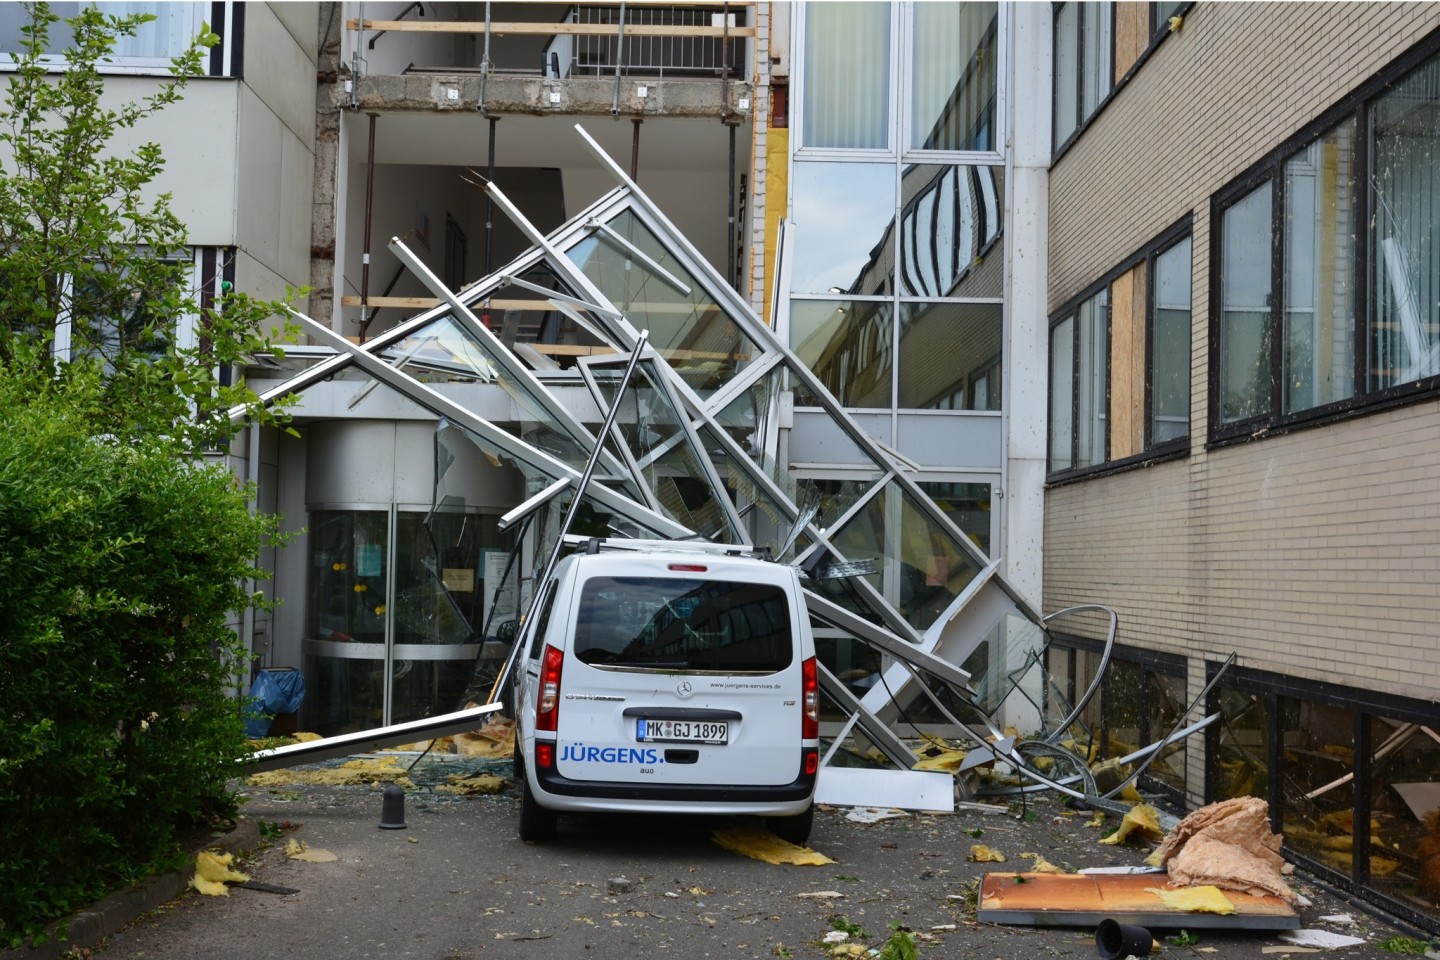 Am Nachmittag des 20. Mai schlug ein Tornado eine Schneise der Verwüstung durch Paderborn. Das Ereignis wird in das kollektive Gedächtnis der Stadt eingehen. © Stadt Paderborn